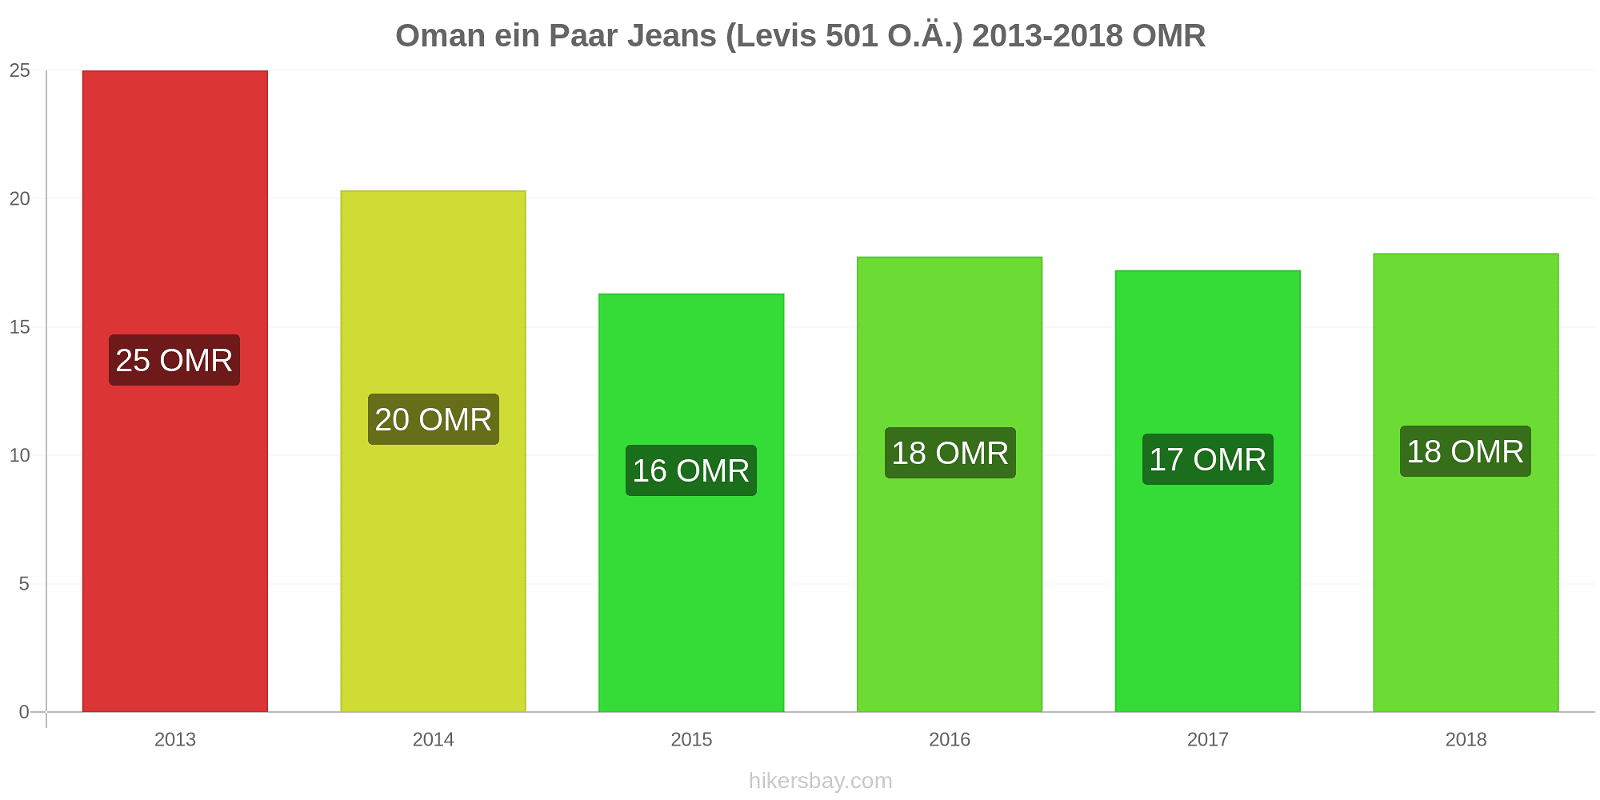 Oman Preisänderungen 1 Paar Jeans (Levis 501 oder ähnlich) hikersbay.com